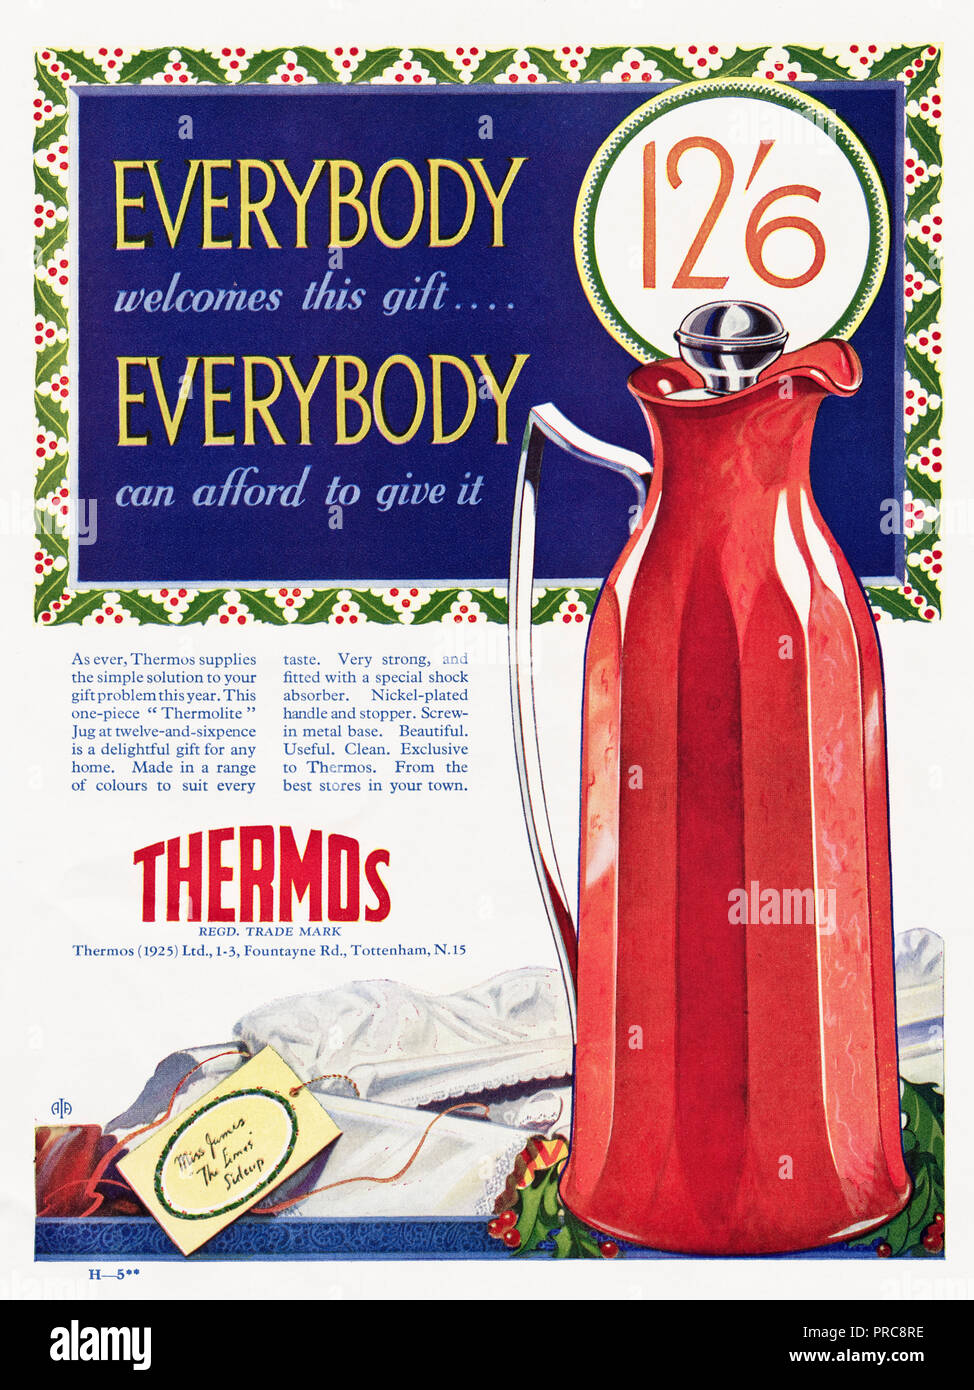 1930er Jahre alten Vintage original advert Werbung Thermoskanne in Englisch  Magazin ca. 1932 Stockfotografie - Alamy